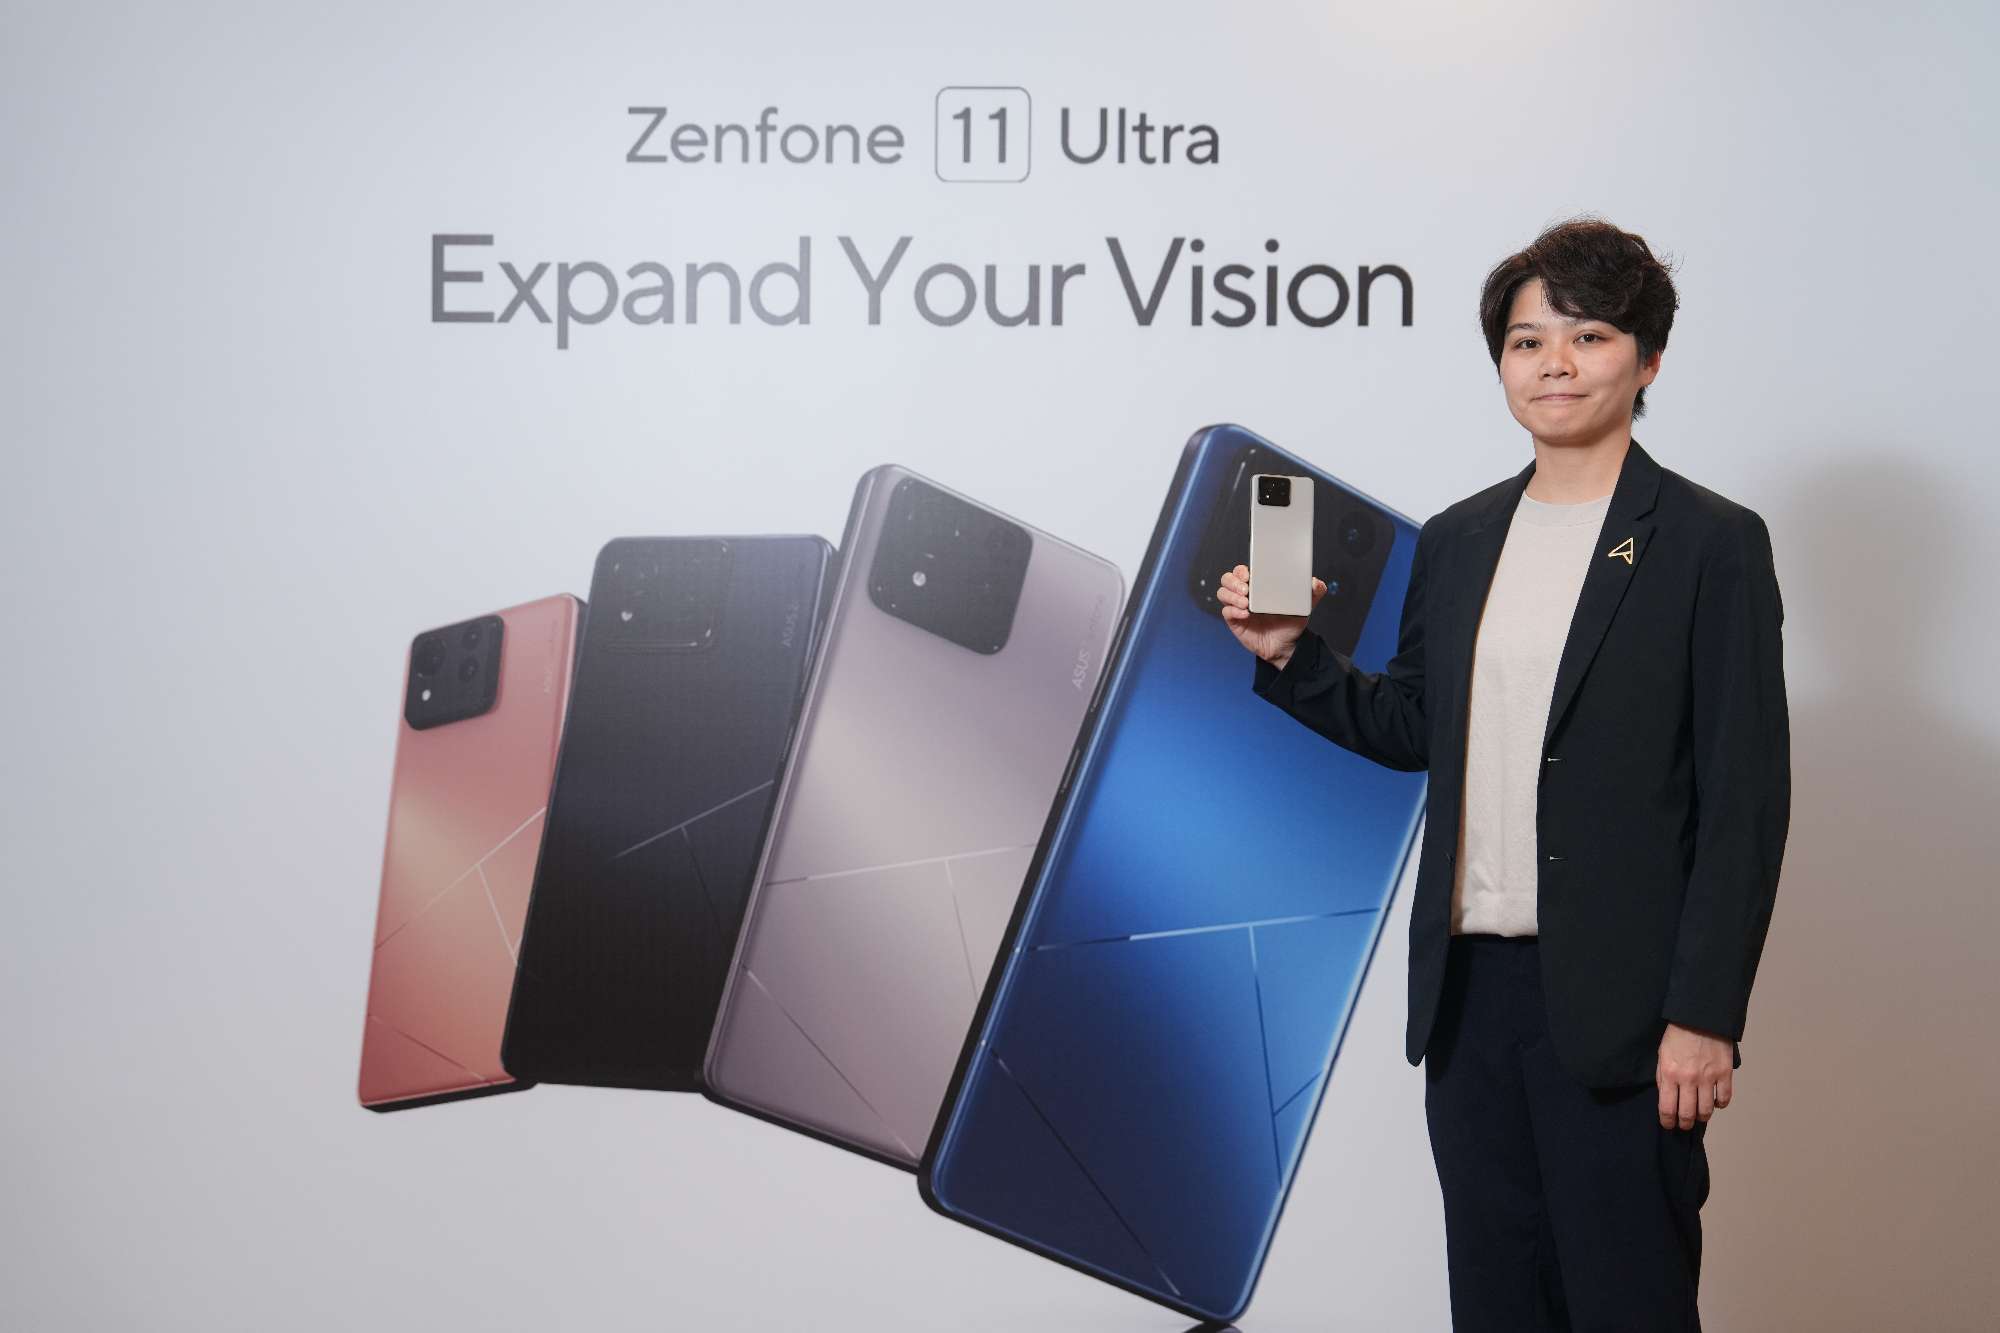 華碩香港通訊業務發展經理 Phyllis Wong 宣佈Zenfone 11 Ultra 手機即日起於香港公開發售.JPG